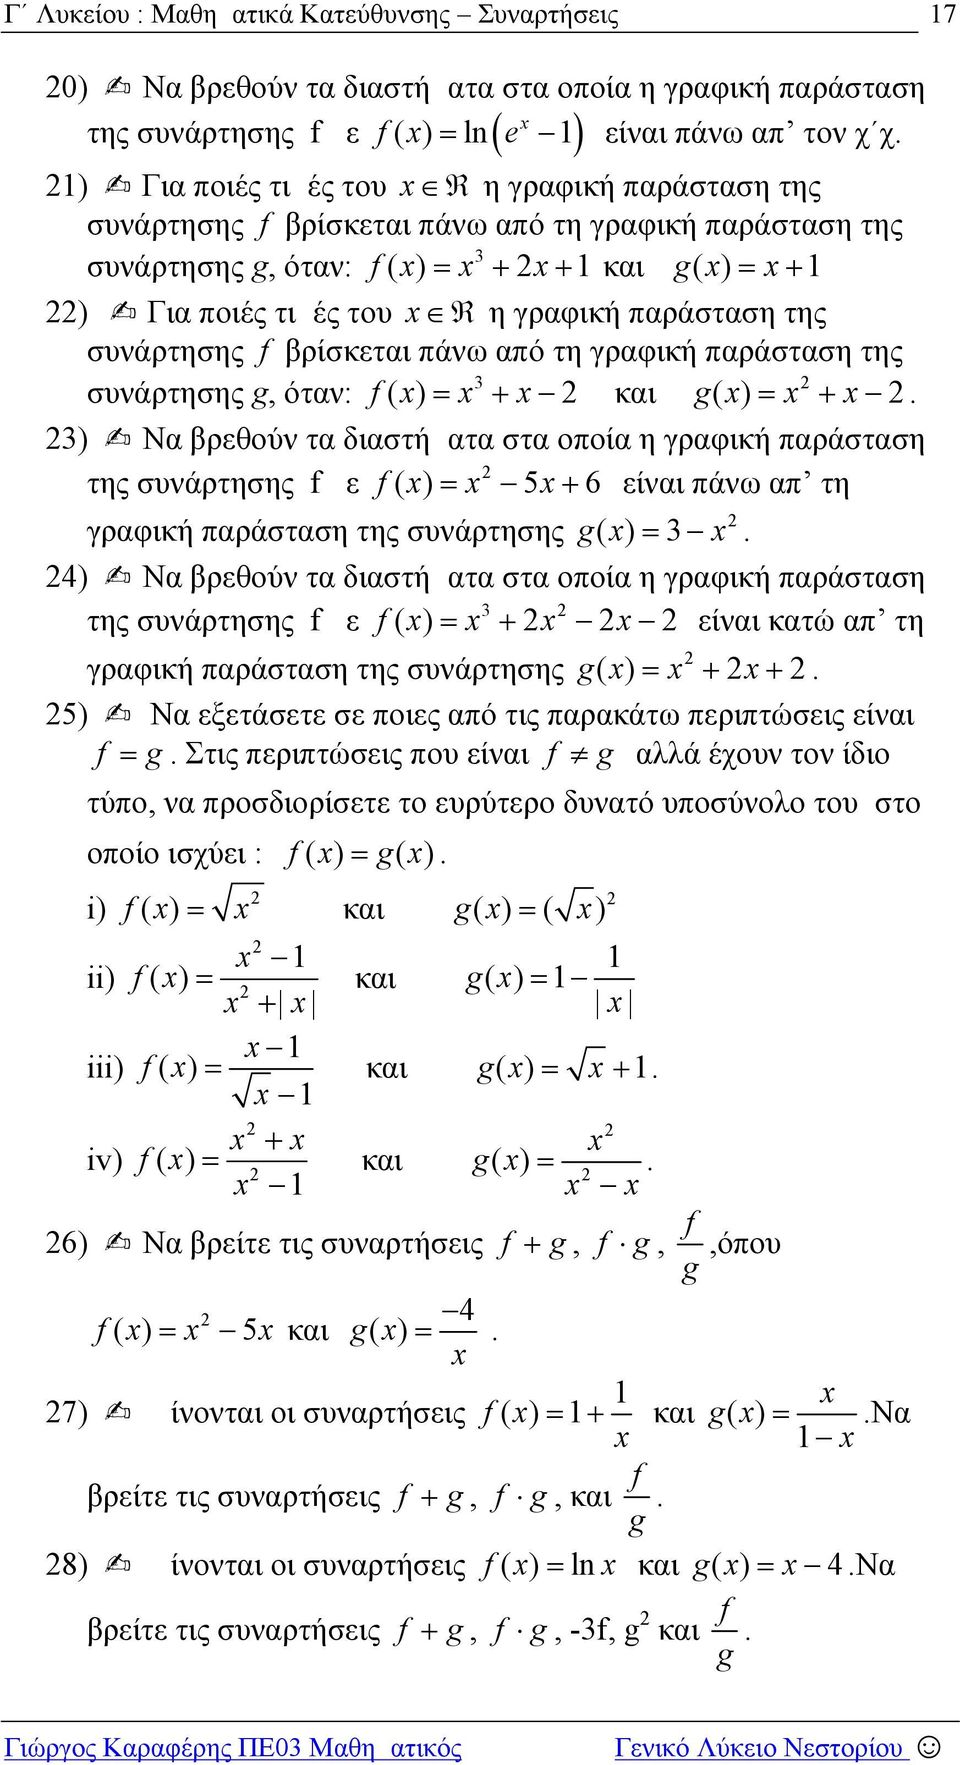 διαστήματα στα οποία η γραφική παράσταση της συνάρτησης με () 5 6 είναι πάνω απ τη γραφική παράσταση της συνάρτησης g() 4) Να βρεθούν τα διαστήματα στα οποία η γραφική παράσταση της συνάρτησης με ()